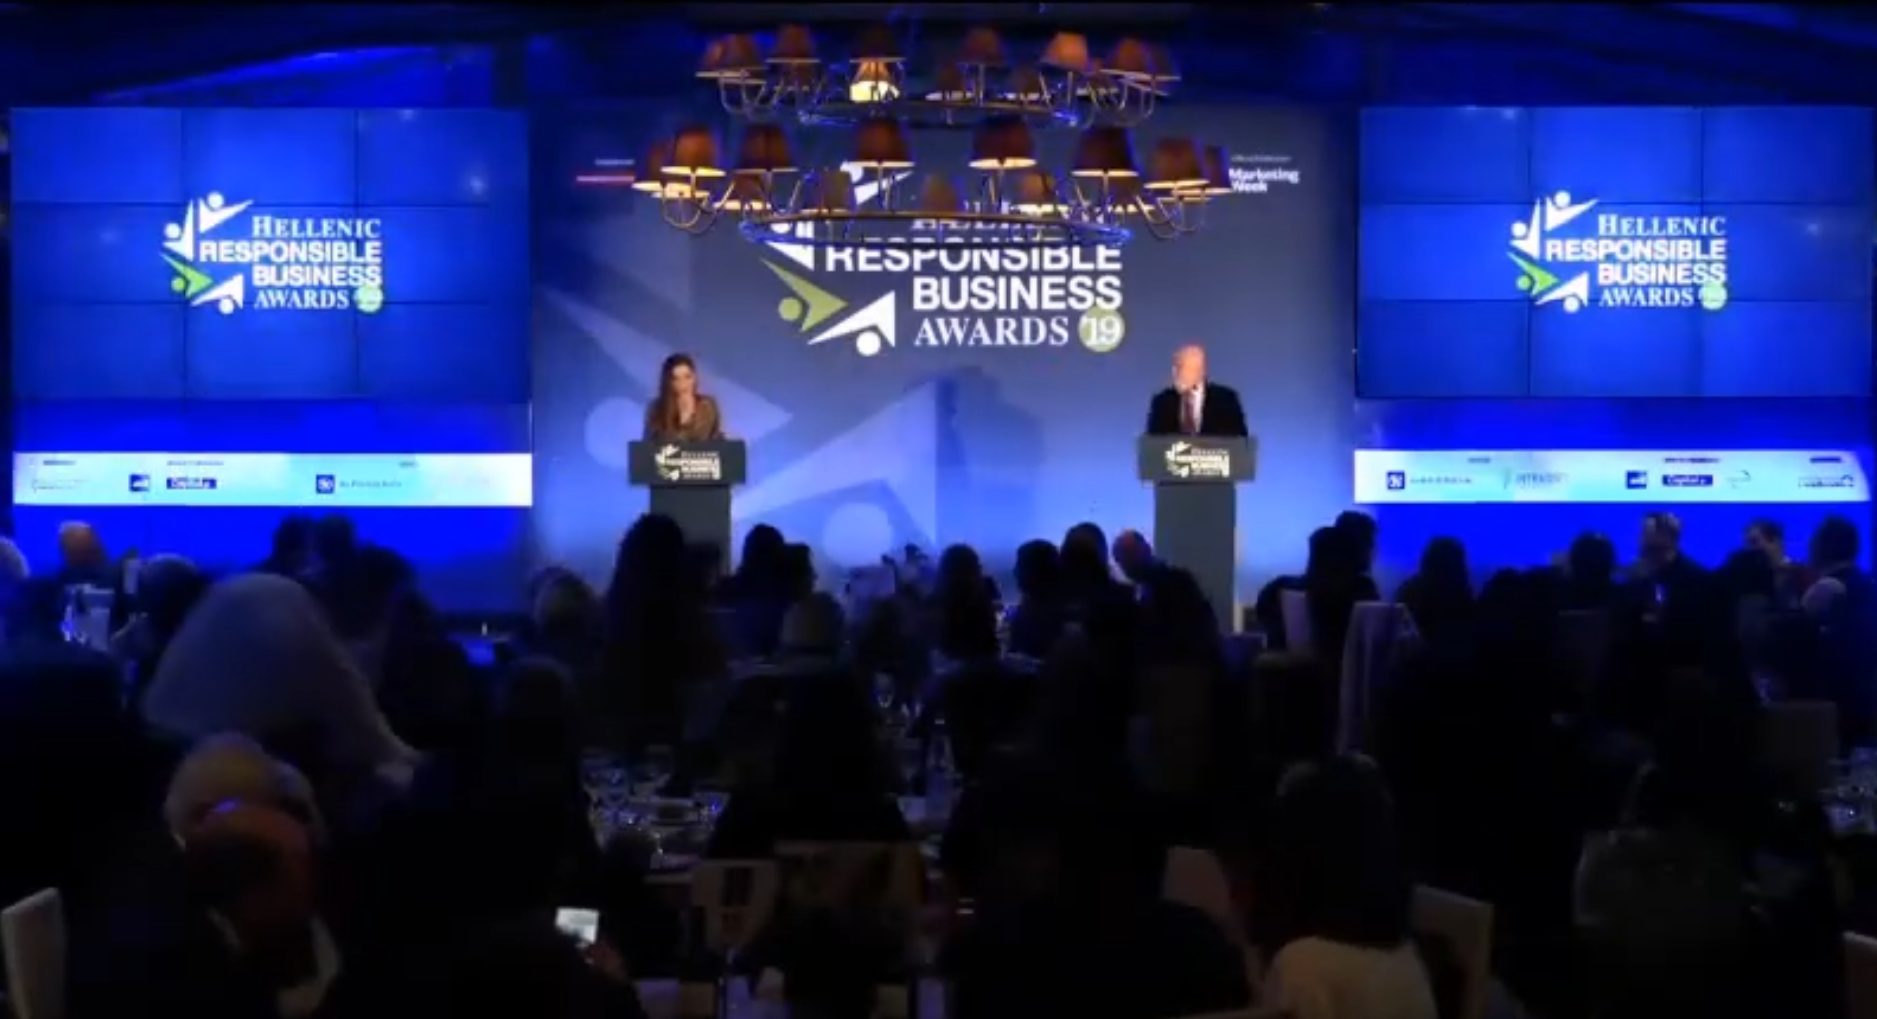 garoufos-award-hellenic responsible business awards